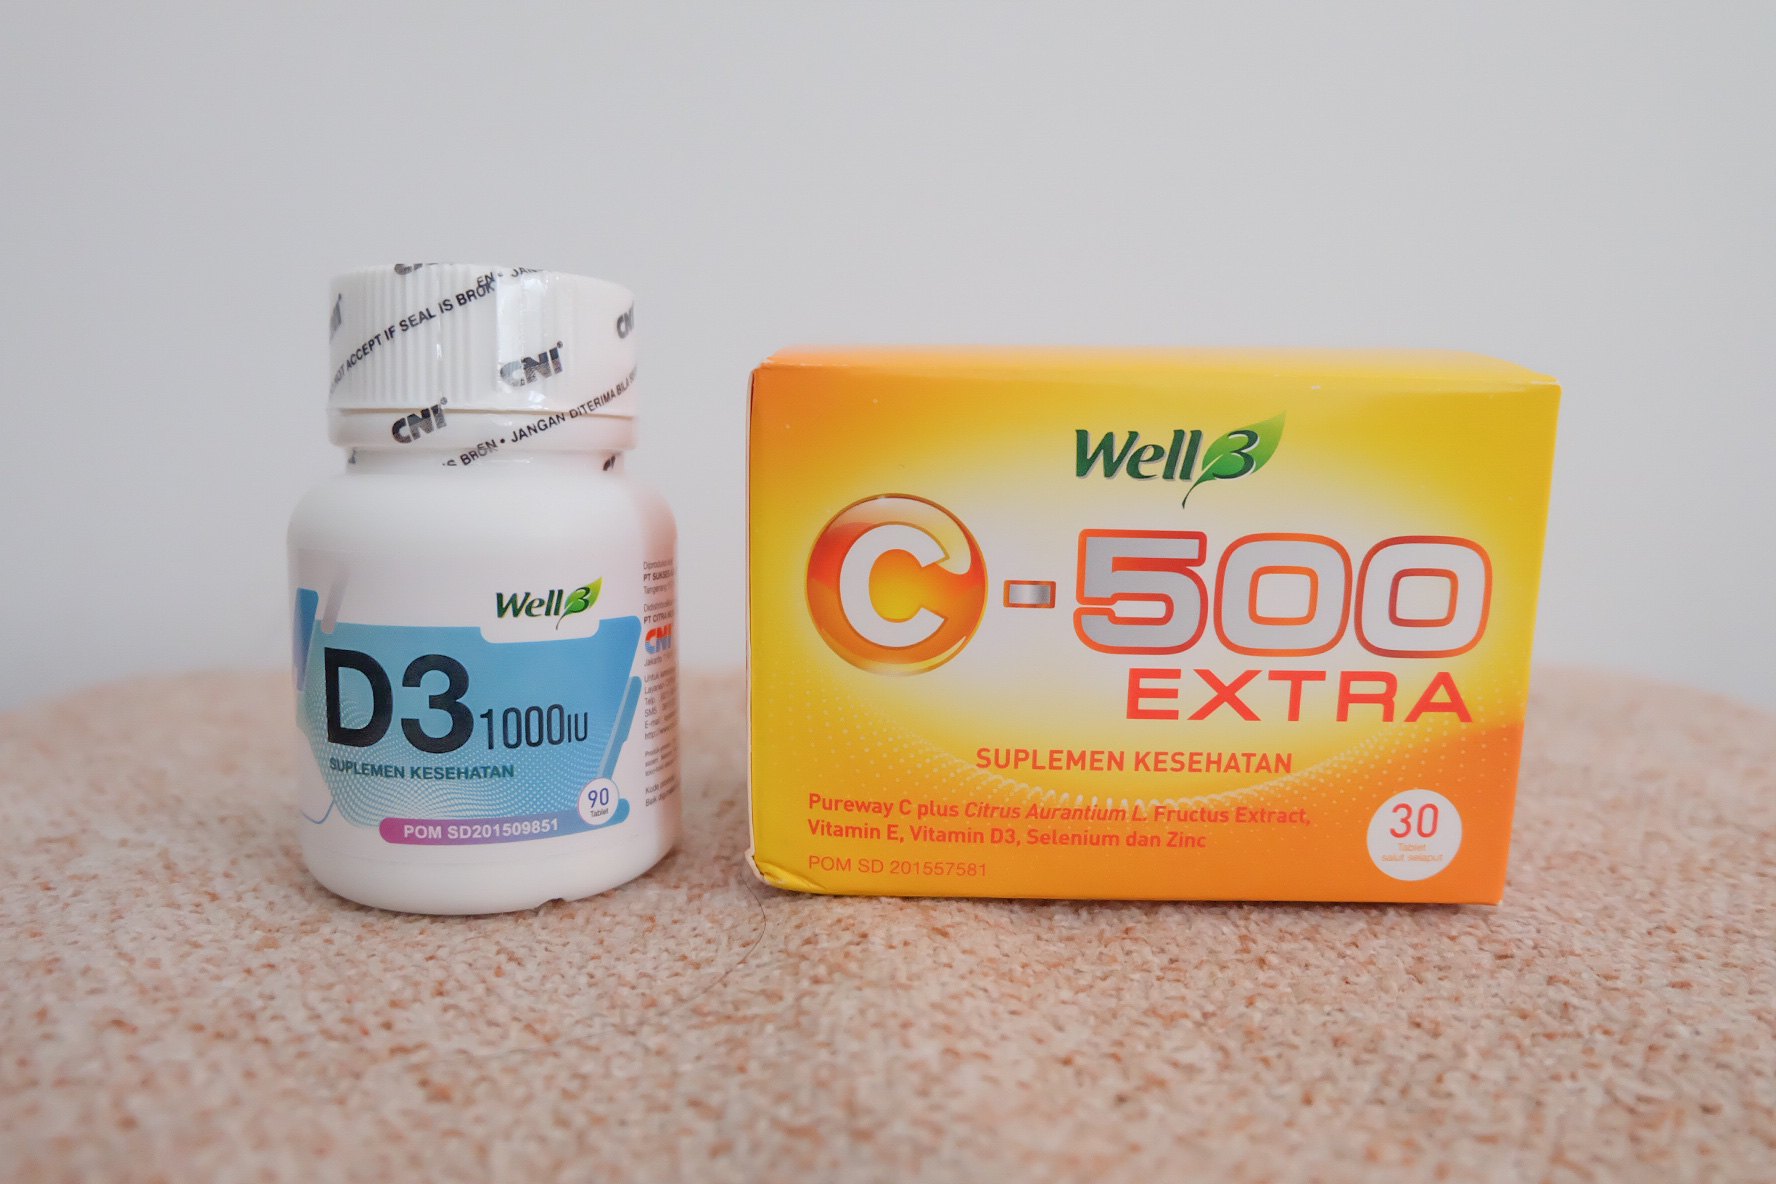 Well3 D3 1000IU & Well C-500 Extra Untuk Meningkatkan Imunitas